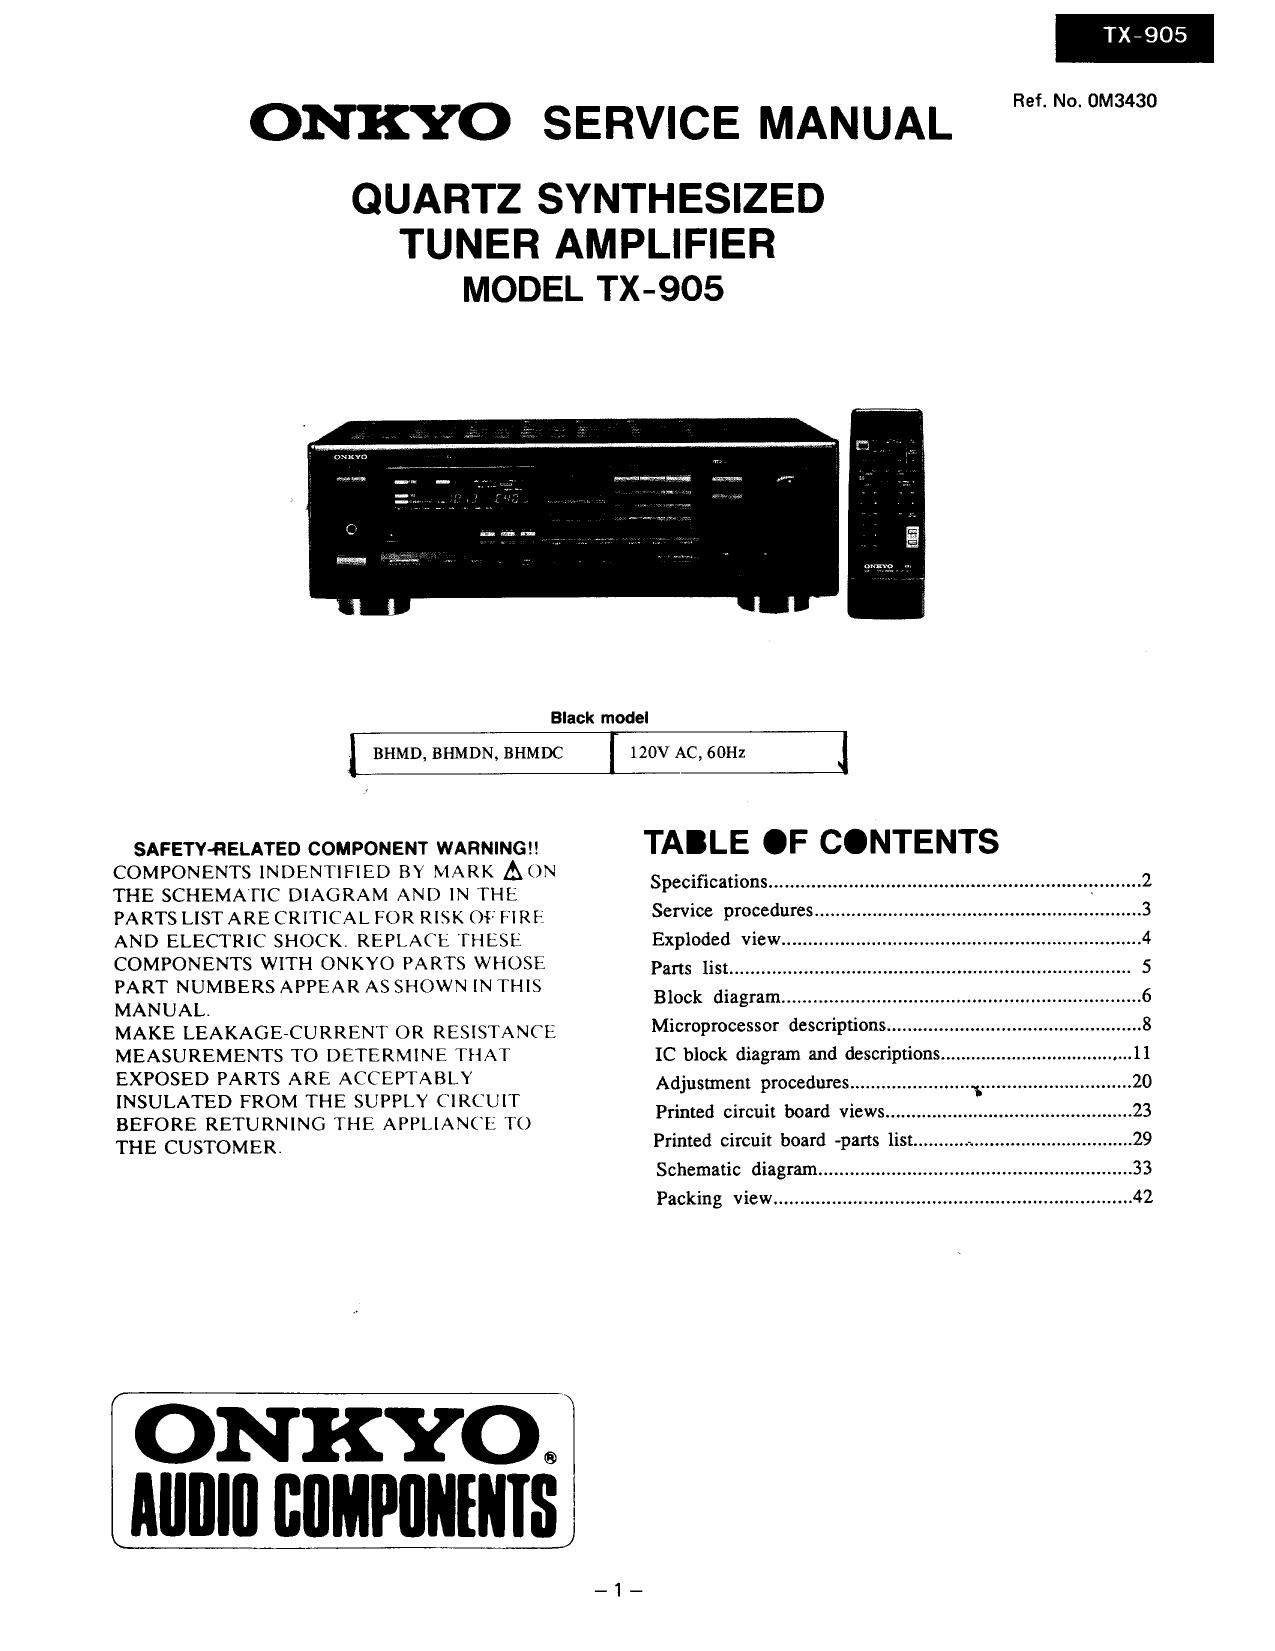 Onkyo TX 905 Service Manual